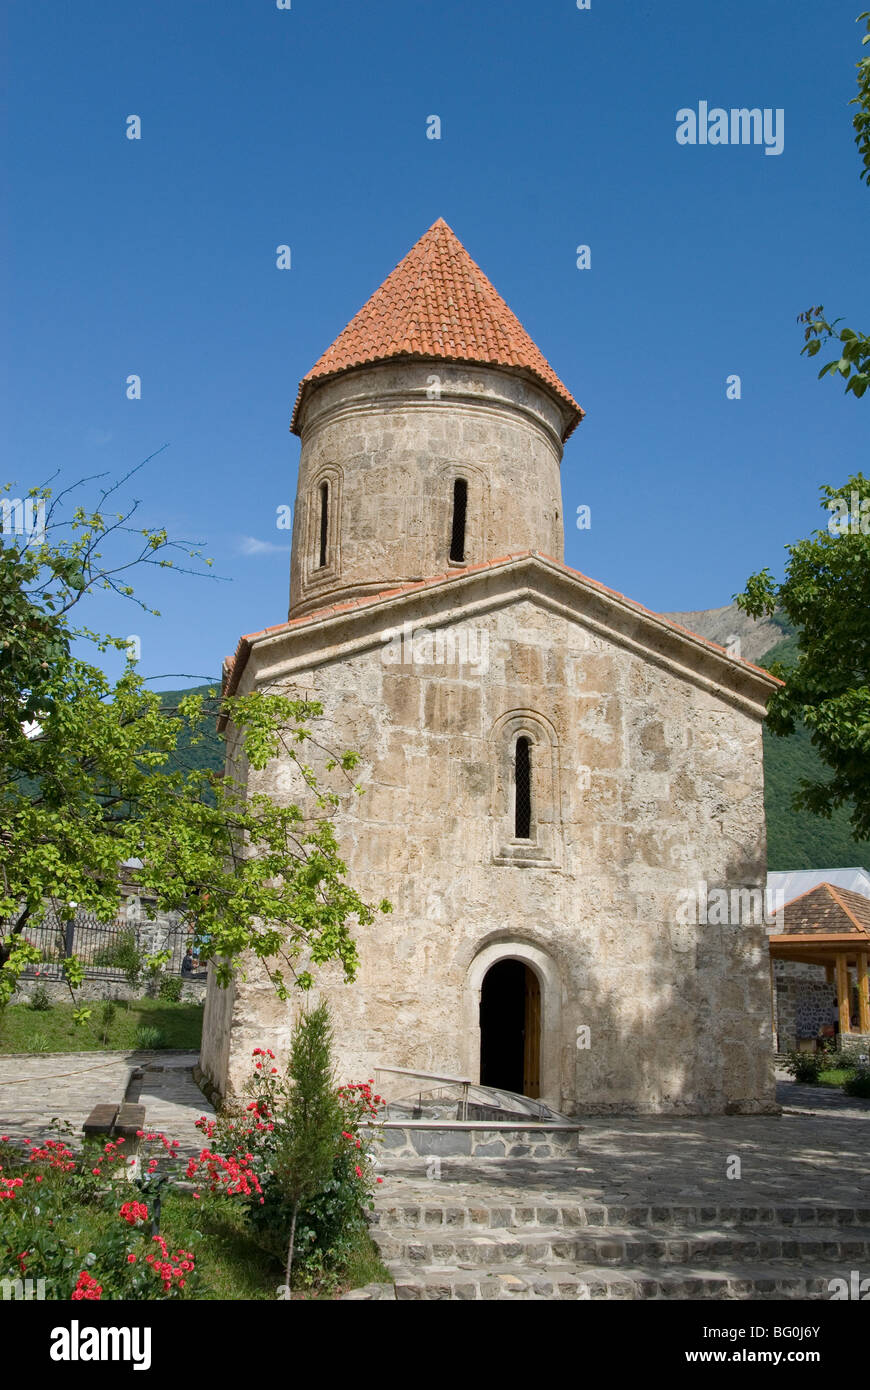 Albanischen Kirche aus dem 12. Jahrhundert, Kish, in der Nähe von Shaki, nördlichen Aserbaidschan, Zentral-Asien, Asien Stockfoto